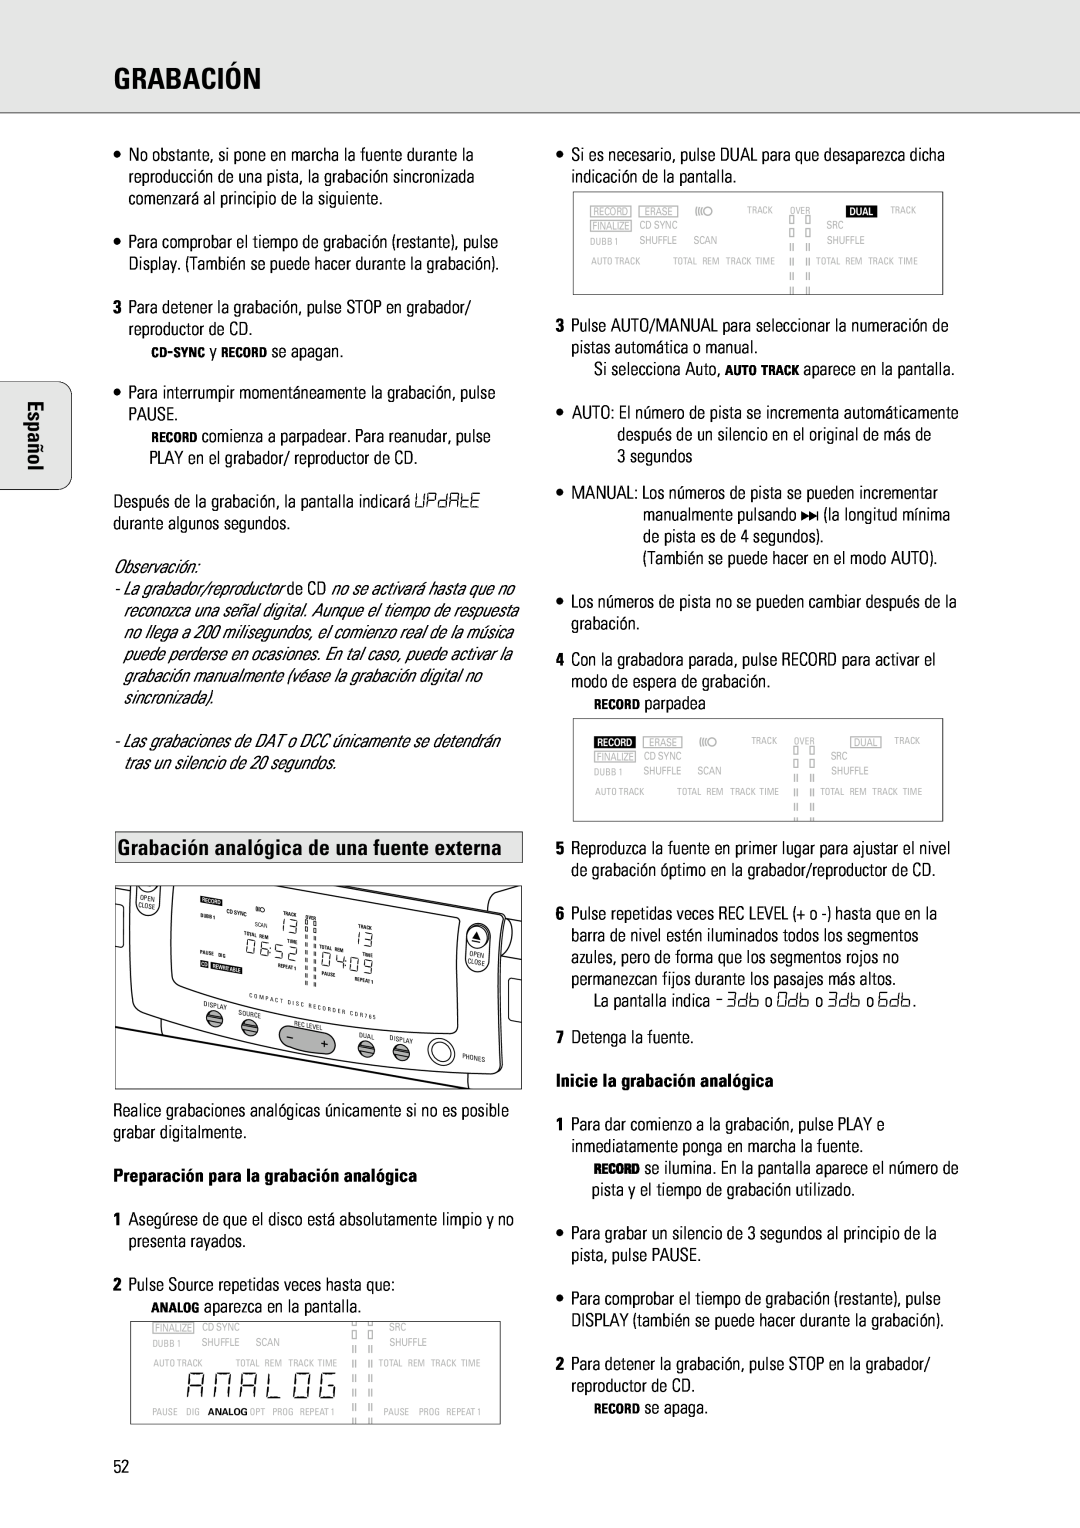 Philips 765 manual Grabación analógica de una fuente externa, Preparación para la grabación analógica, Español 